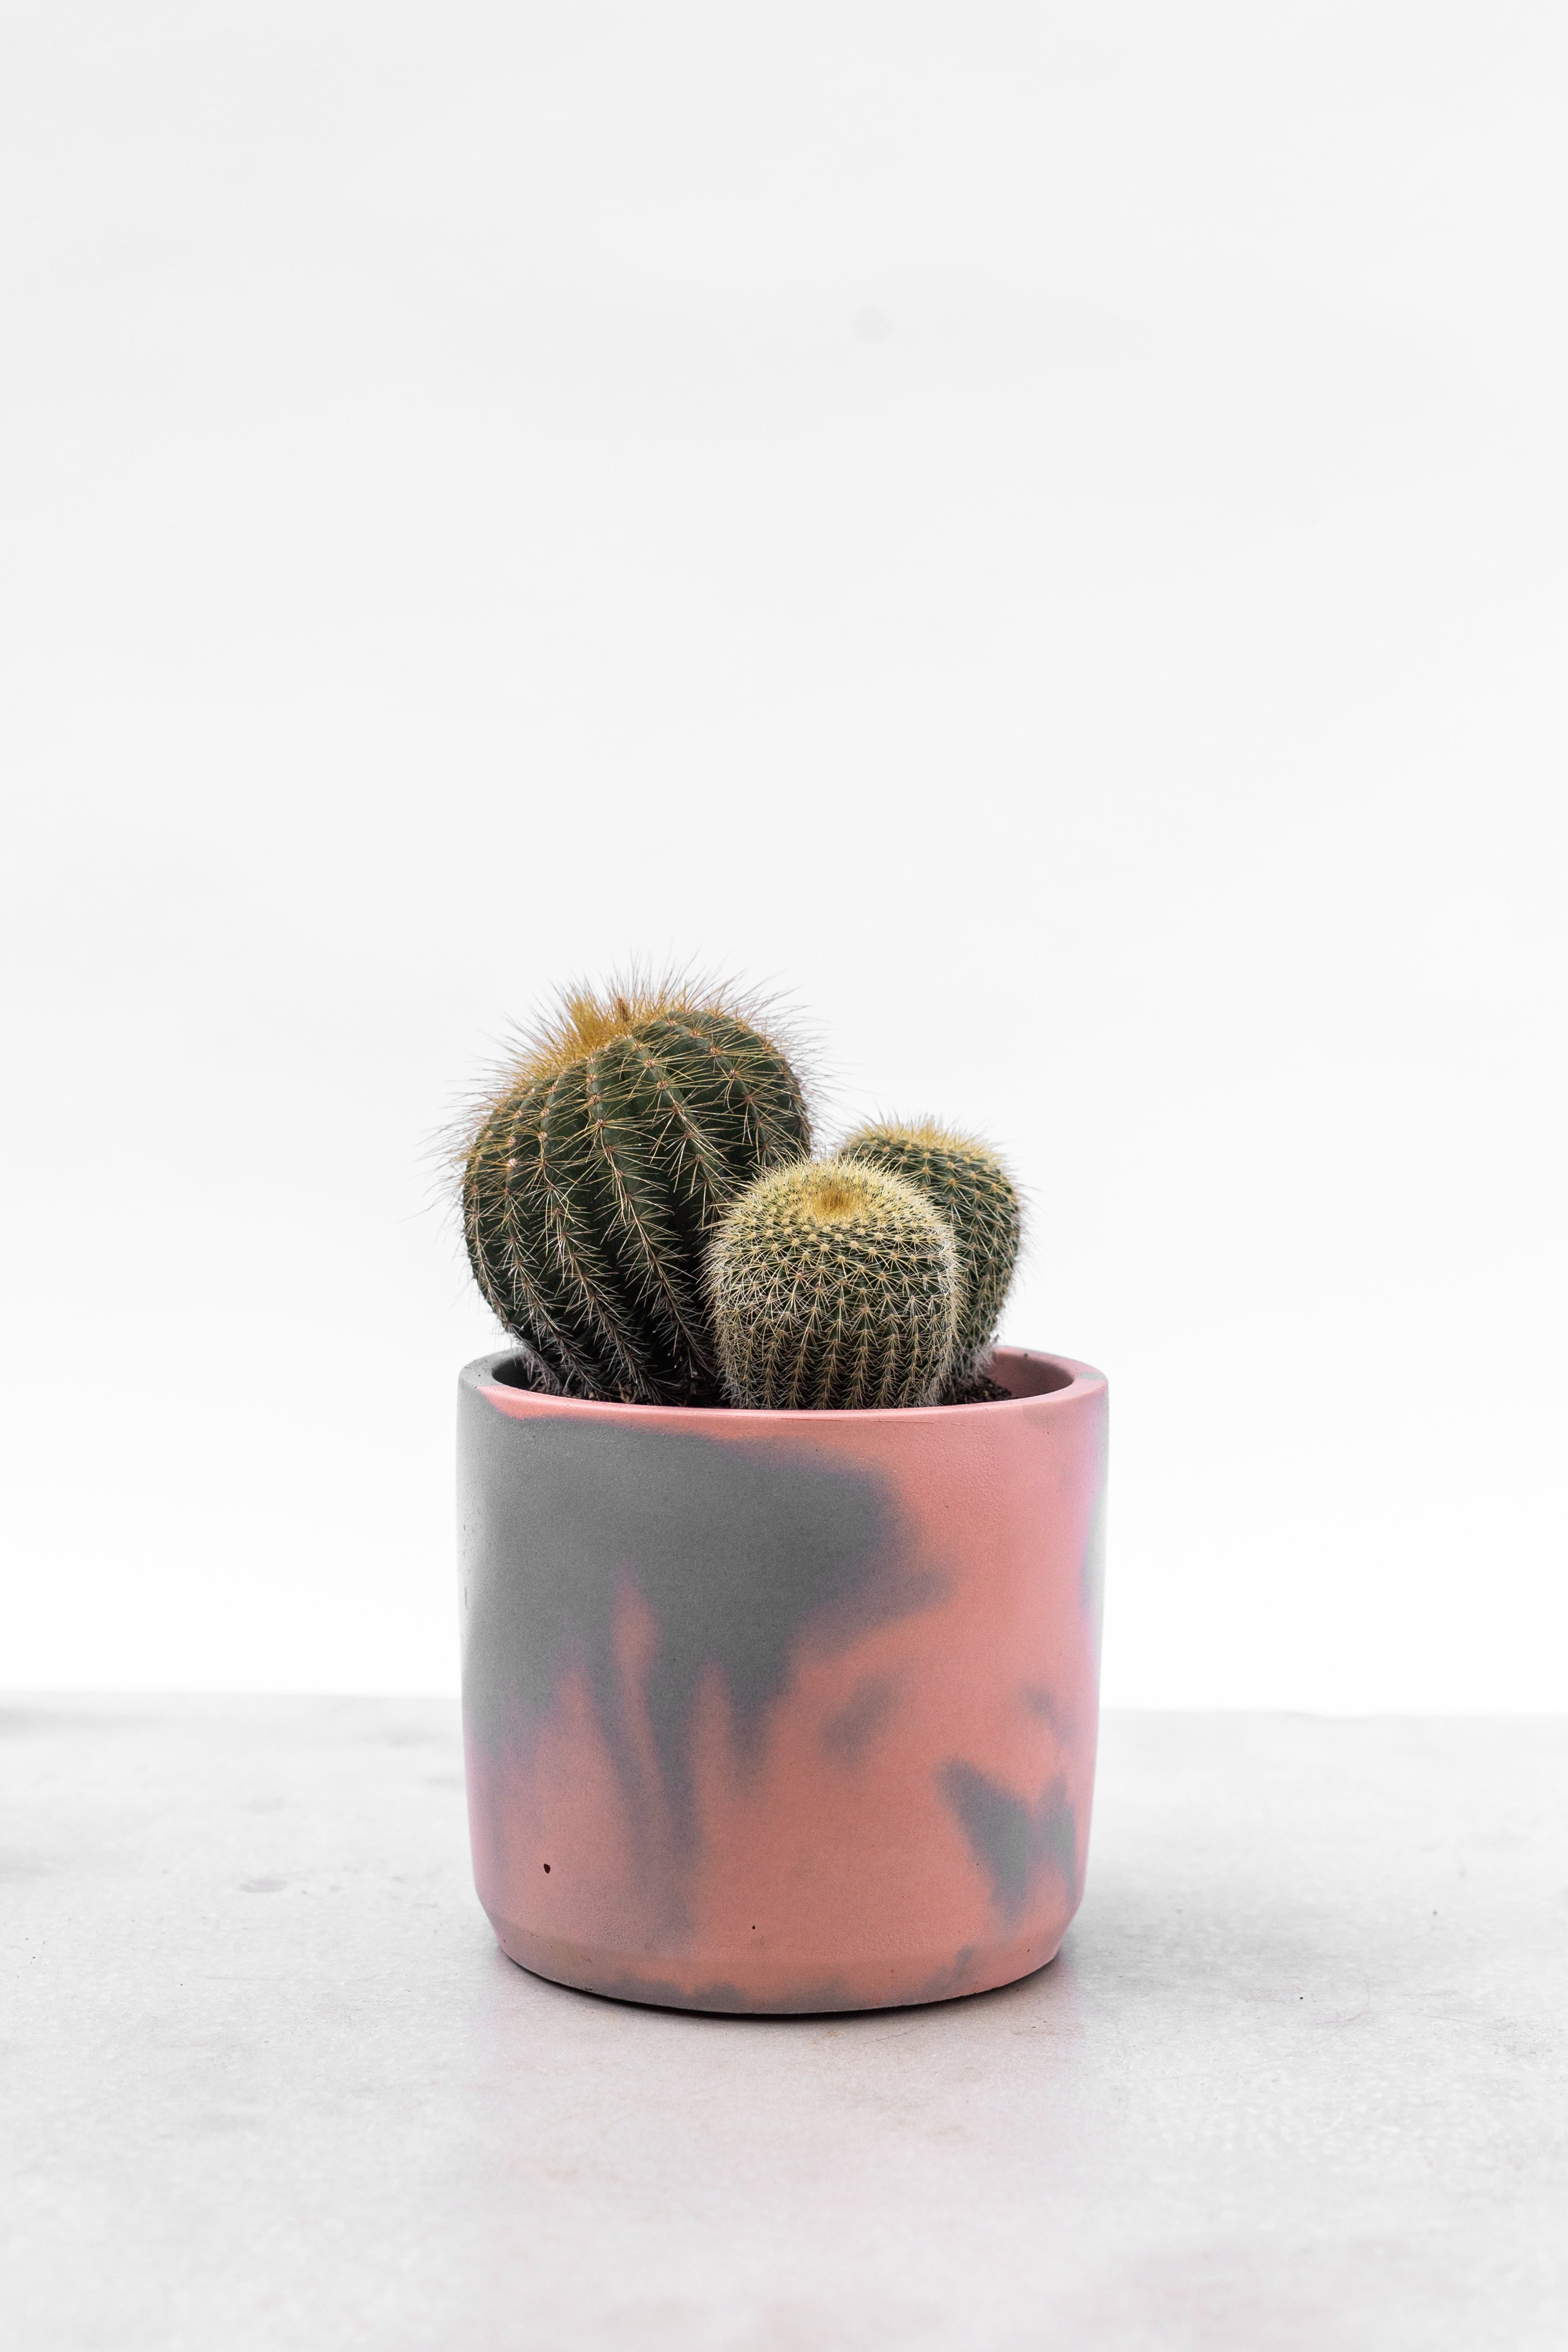 Baby Cactus houseplants in handmade pots